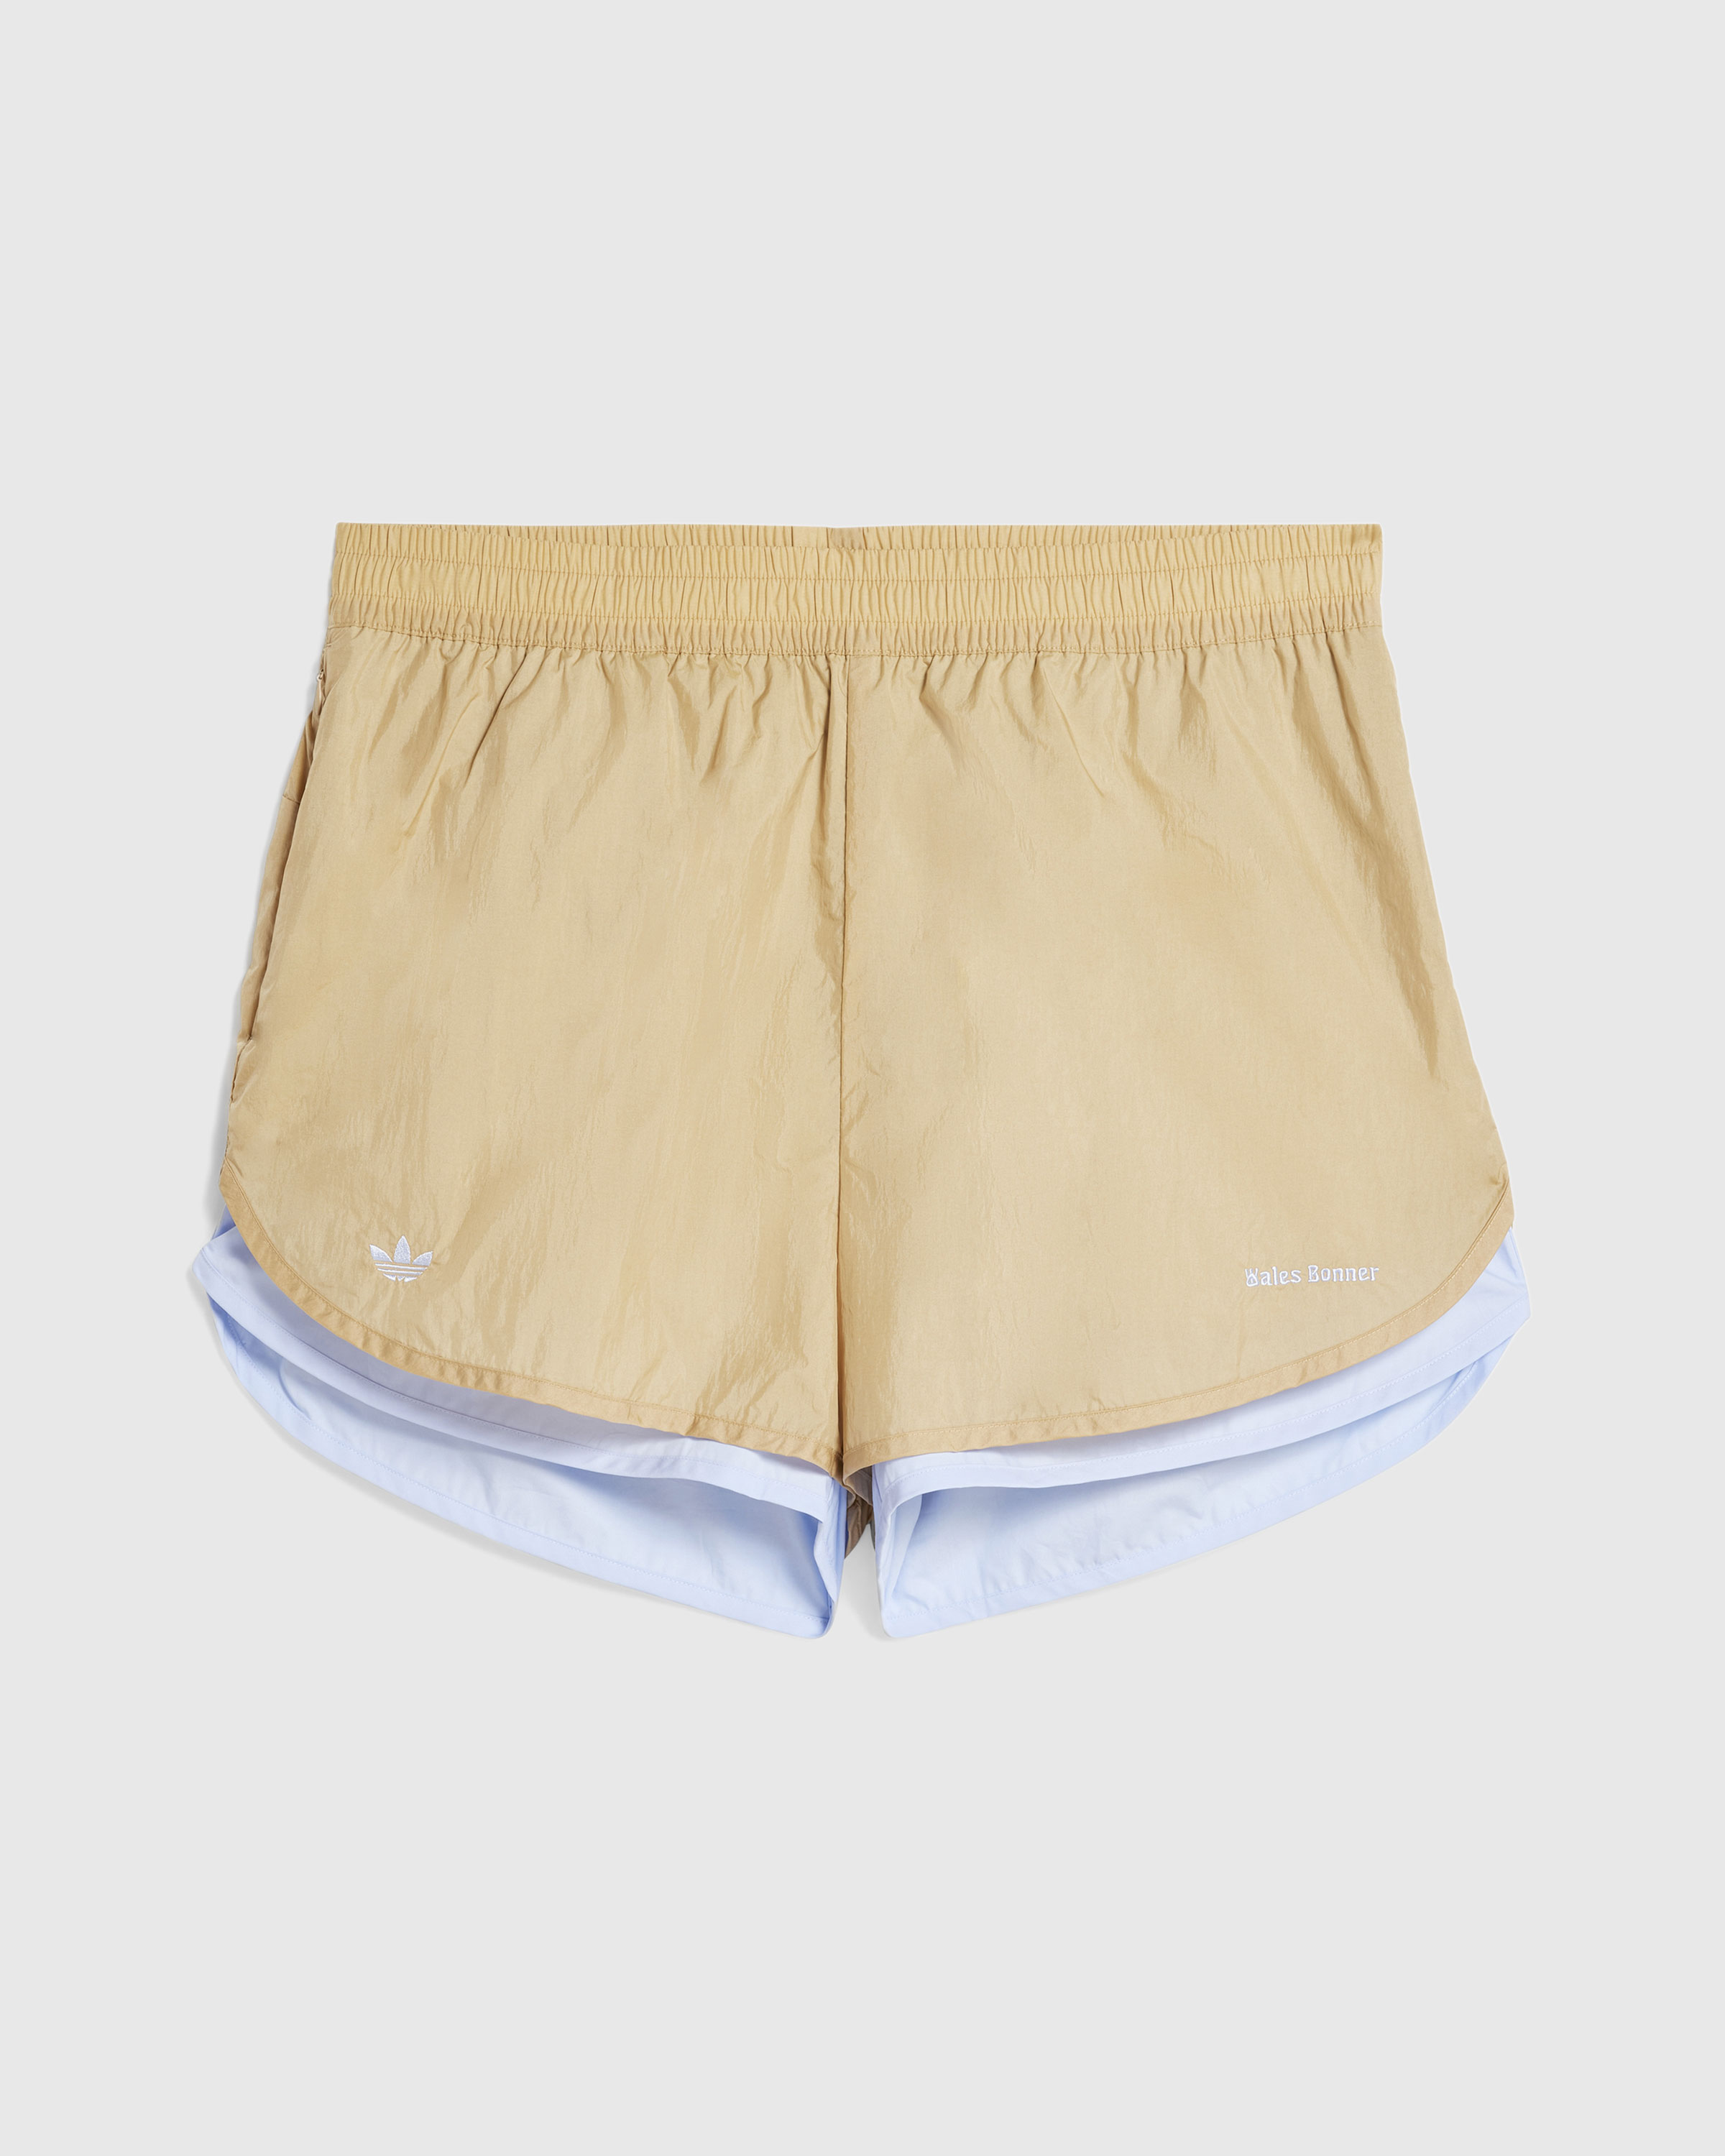 Adidas x Wales Bonner – Nylon Shorts Beige - Active Shorts - Beige - Image 1